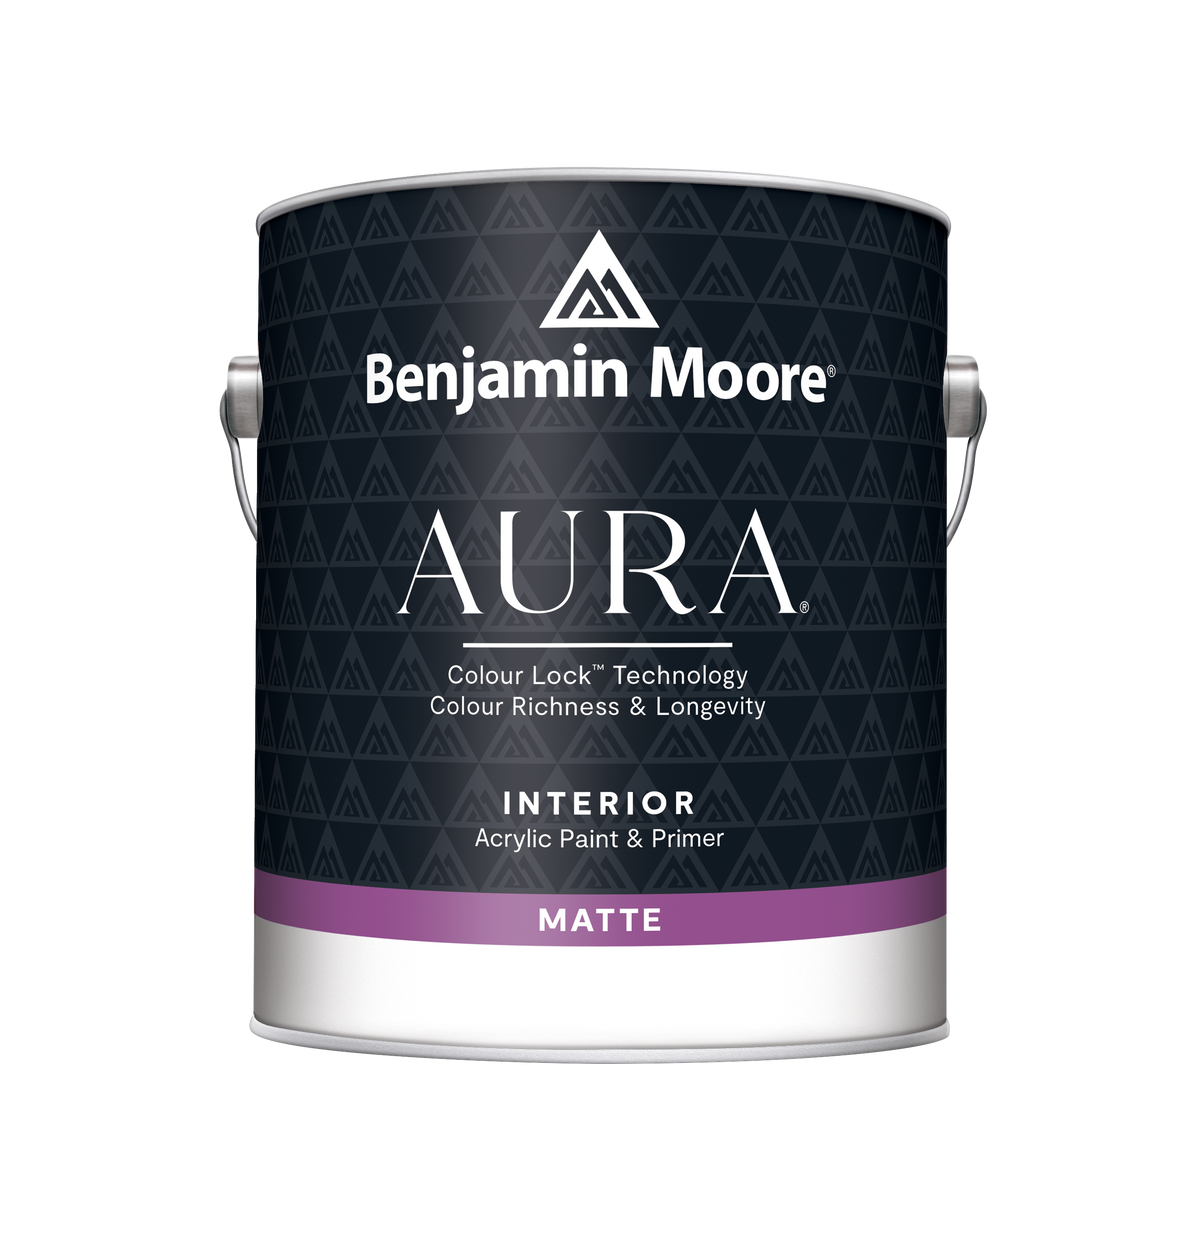 AURA® Waterborne Interior Paint bucket in Matte finish